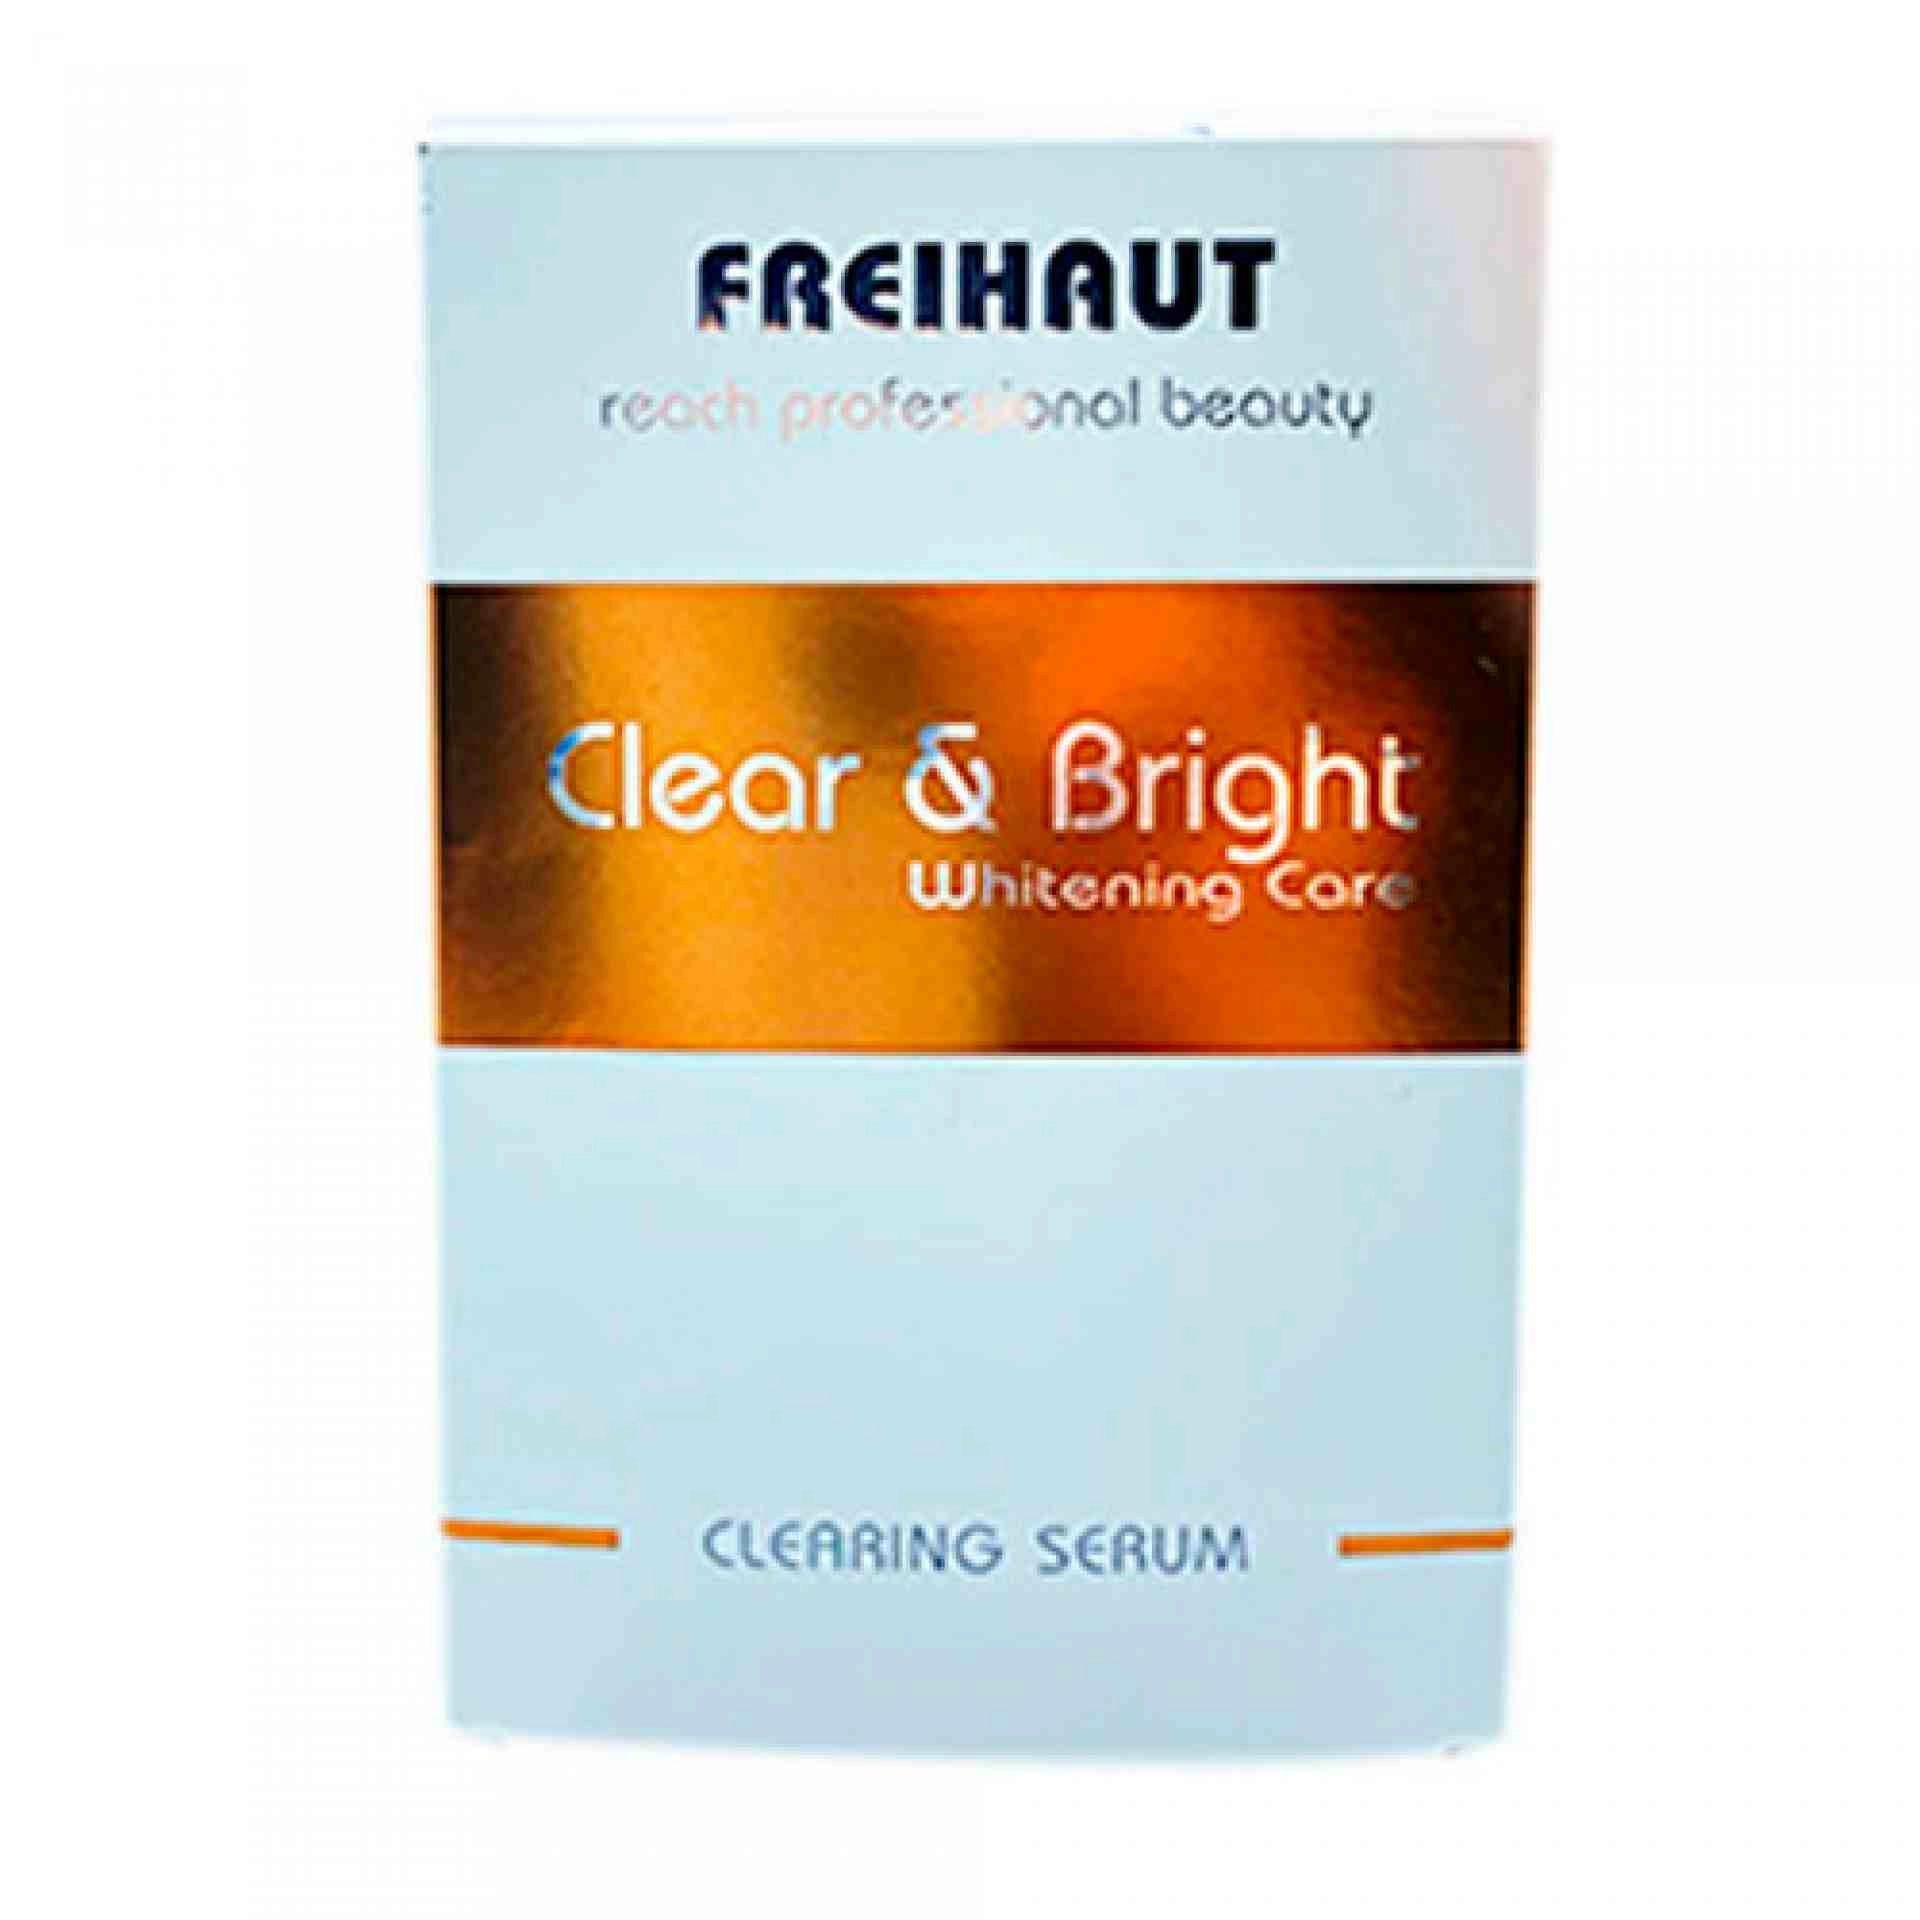 Clear & Bright Whitening Care Clearing Serum 30 ml Freihaut®